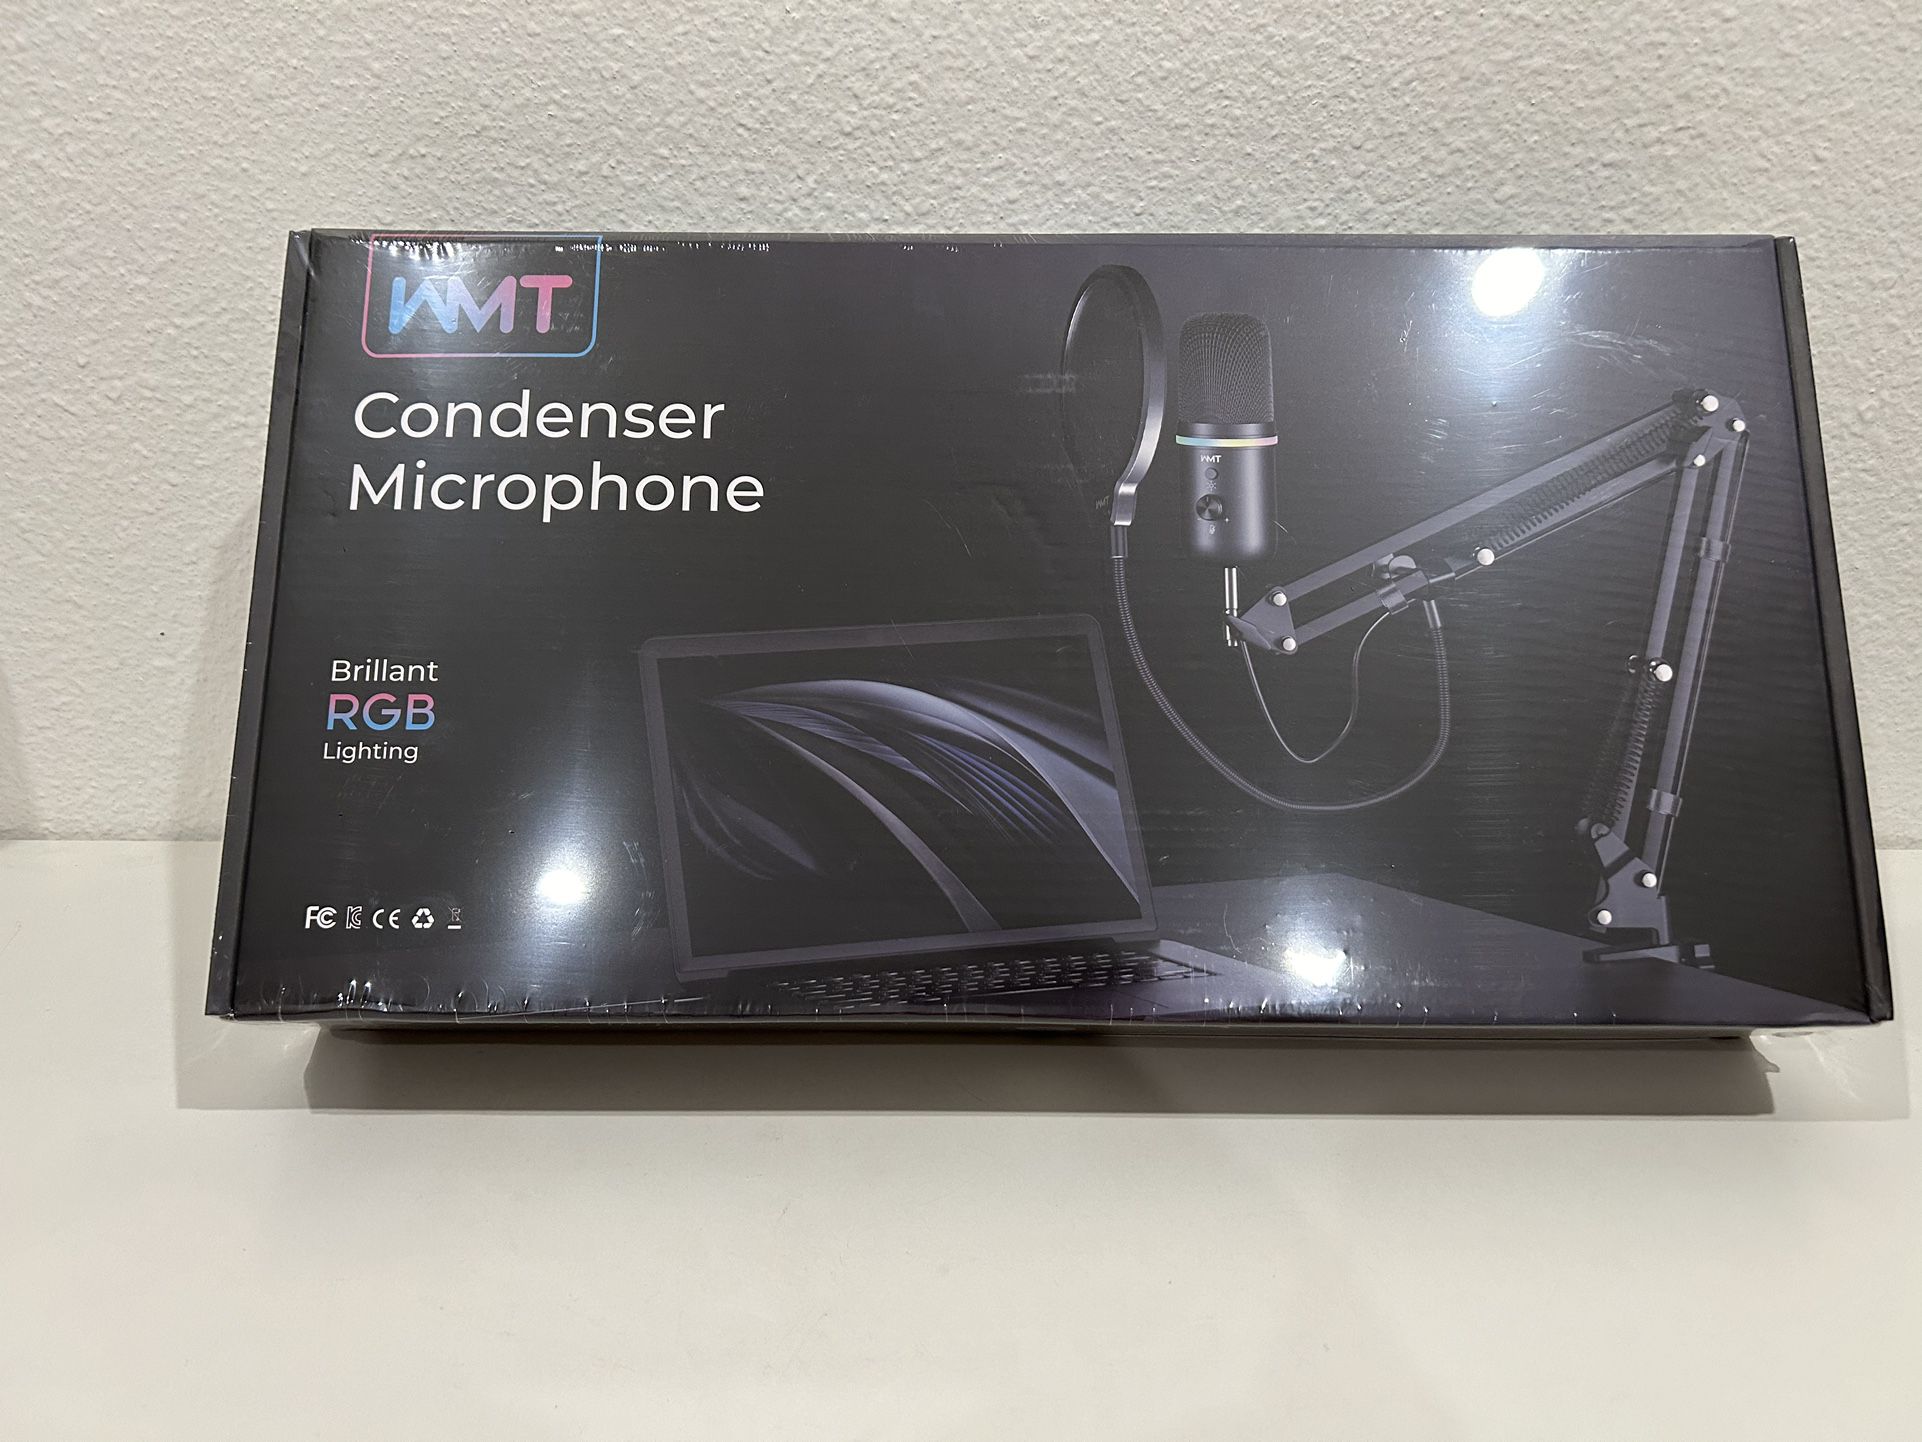 WMT Condenser Microphone